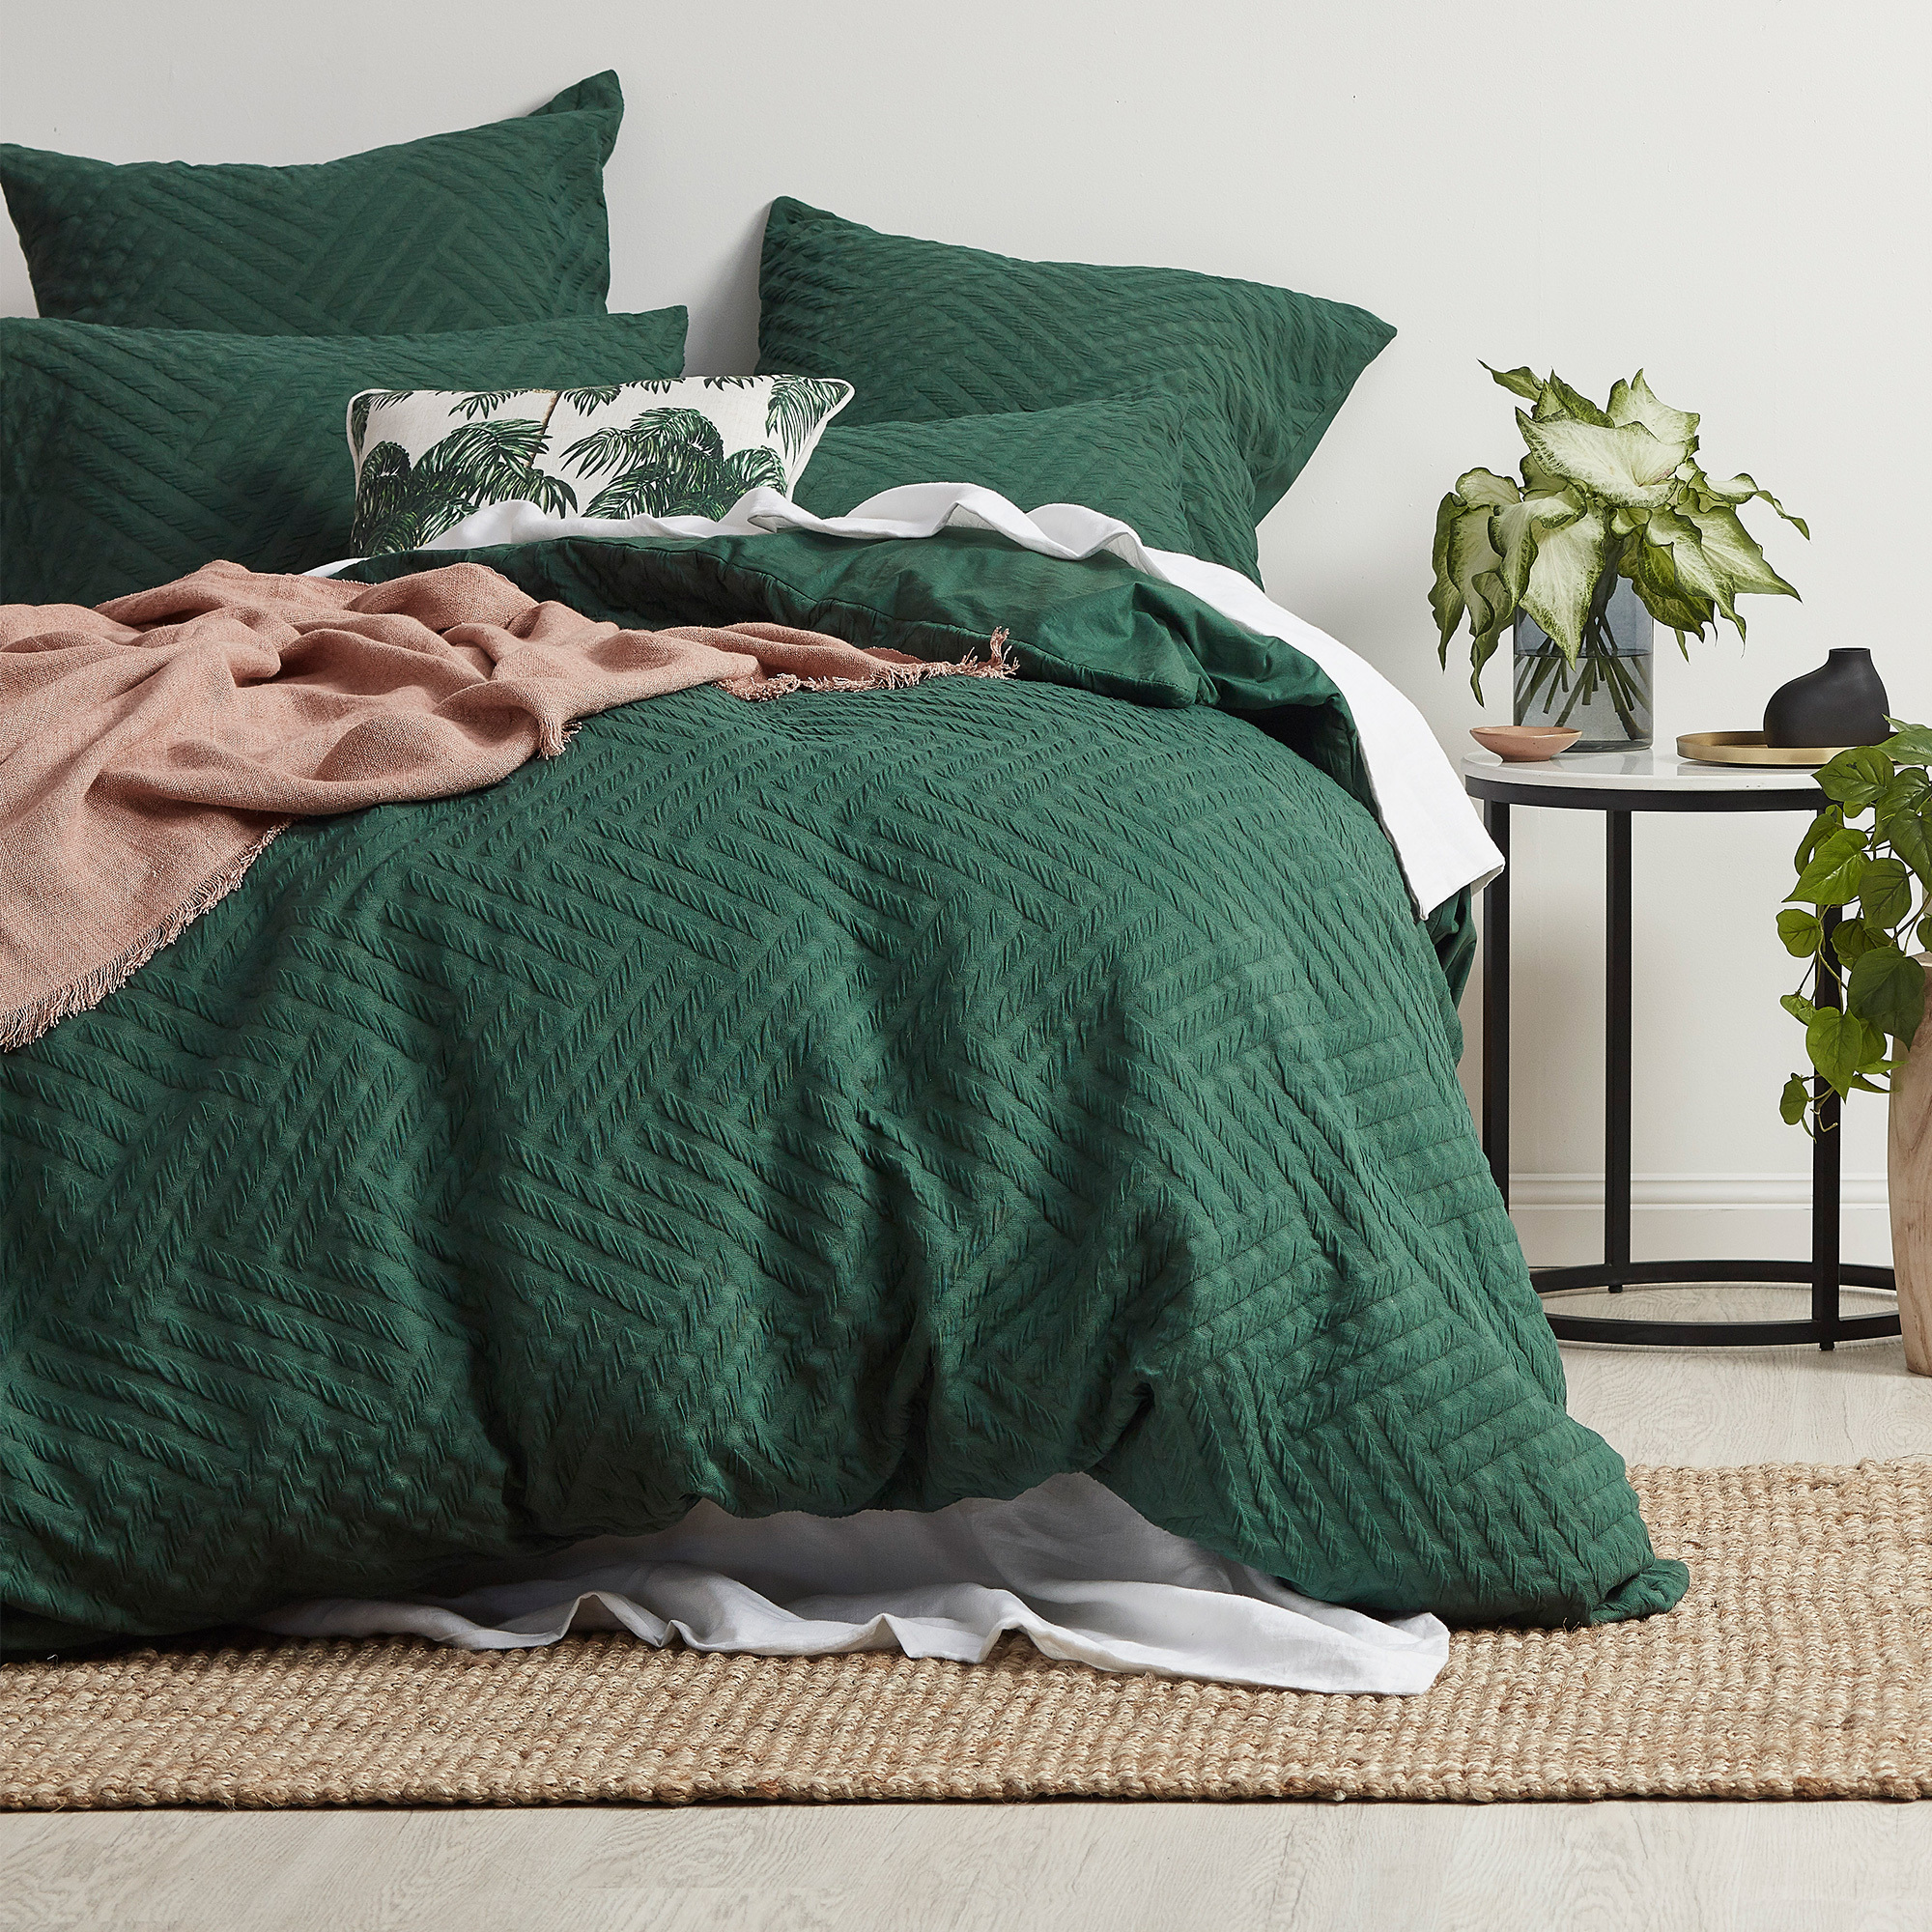 Vergeet wit beddengoed: dé kleur voor op je bed | HomeDeco.nl